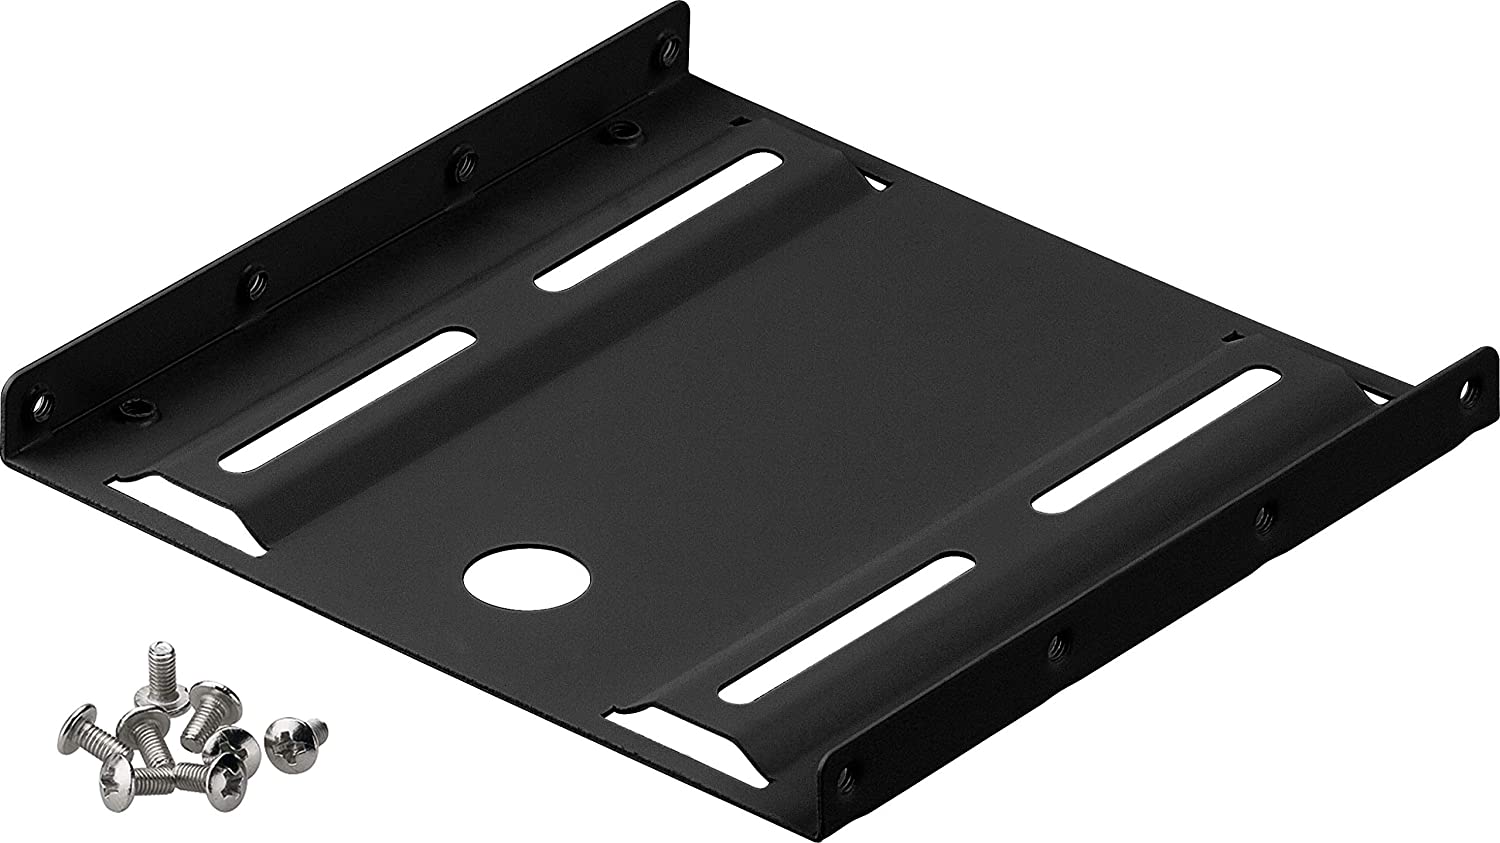 2,5" Festplatten-Einbaurahmen auf 3,5" - 1-fach geeignet für den Einbau einer 2,5" Festplatte in einen 3,5" Gehäuseschacht, Schwarz | #Elektroniktrade.ch#